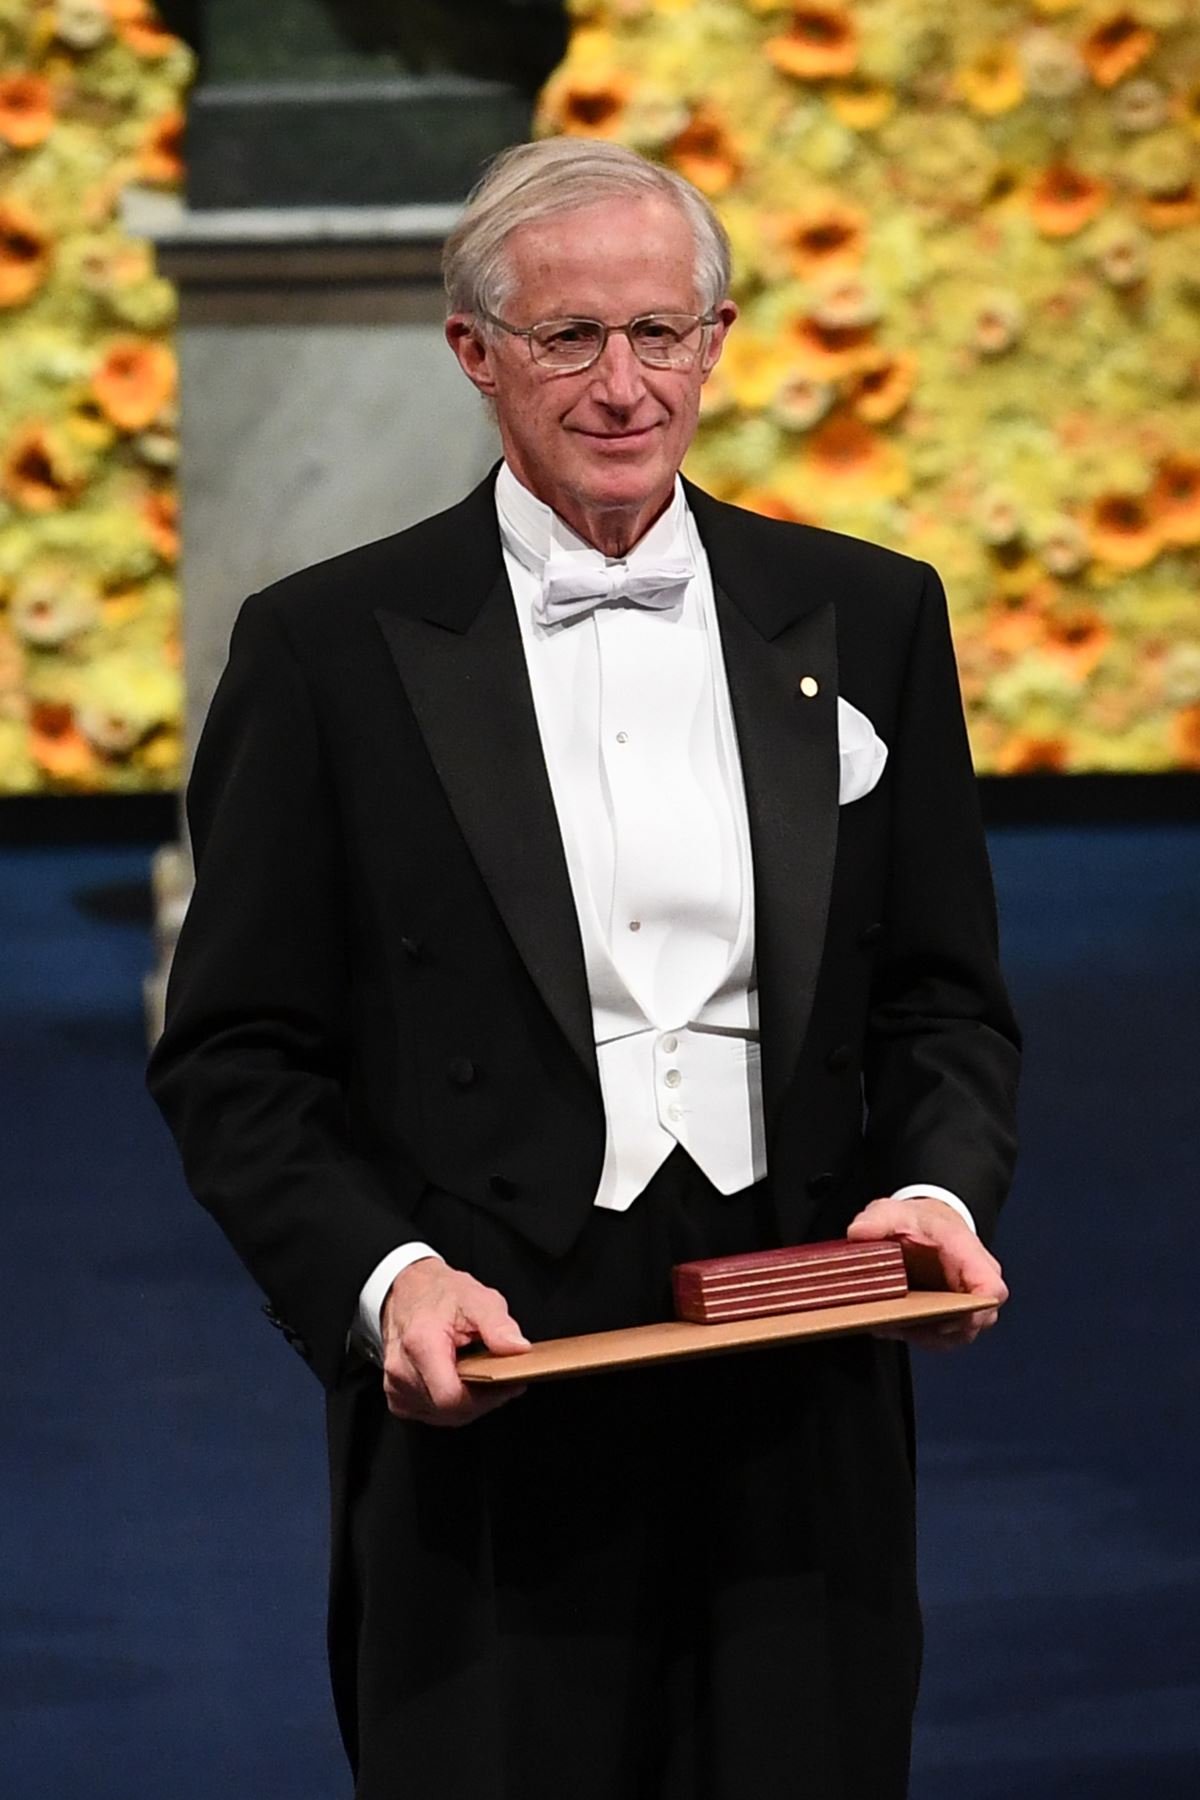 El economista estadounidense y co-laureado del Premio Nobel de Ciencias Económicas 2018 William Nordhaus posa con su Premio Nobel durante la ceremonia de entrega de premios 2018 el 10 de diciembre de 2018 en la Sala de Conciertos de Estocolmo, Suecia.
AFP